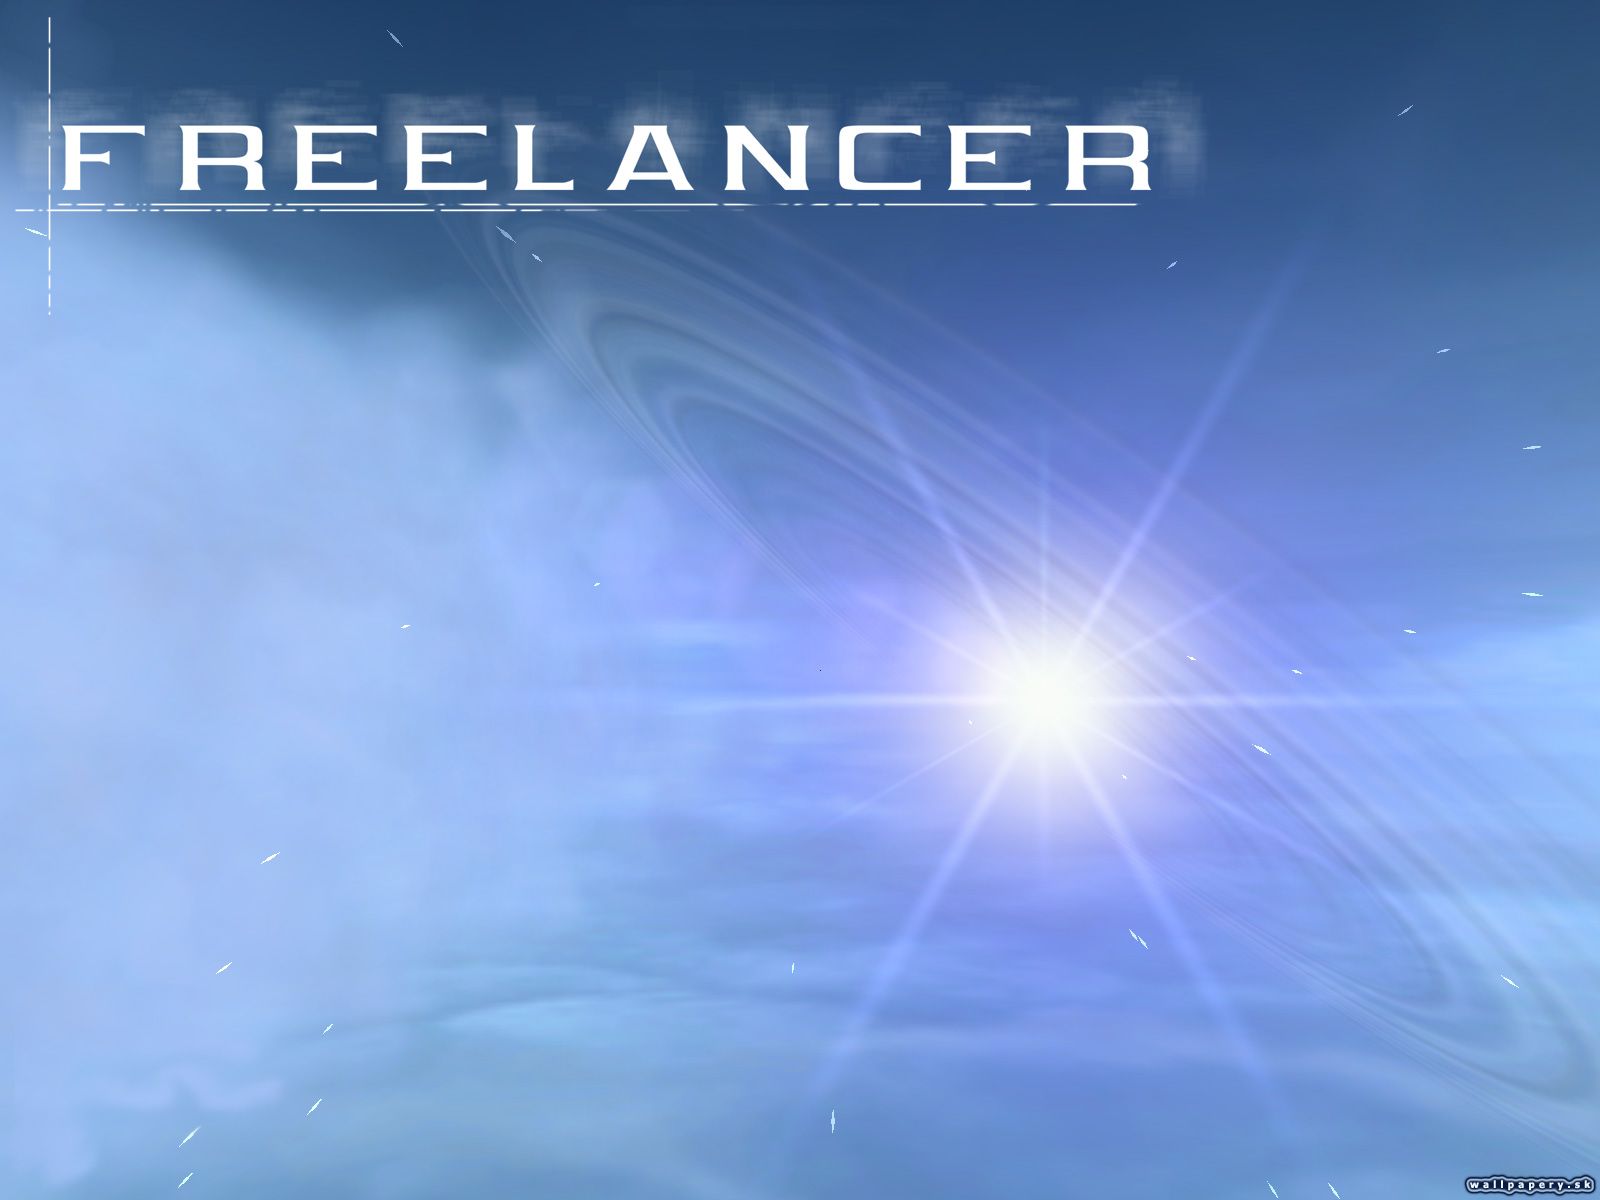 Freelancer - wallpaper 3